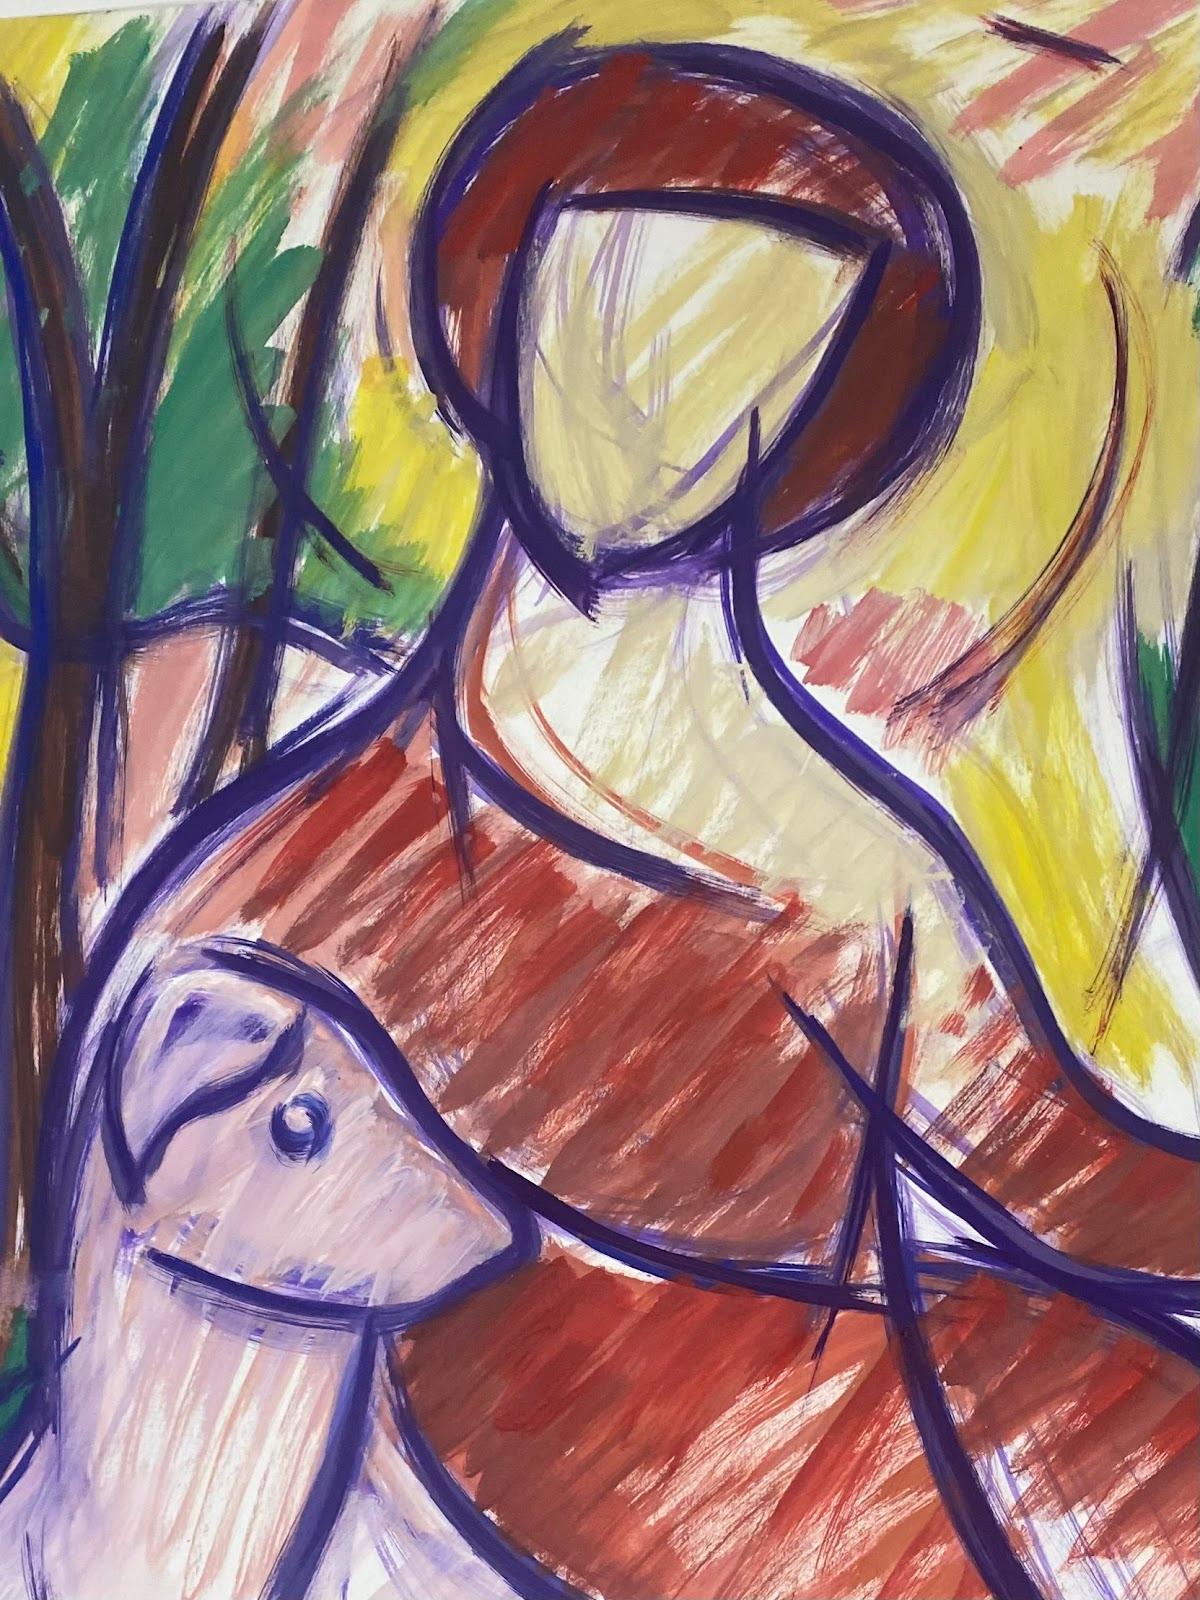 Französisches modernistisches Gemälde des 20. Jahrhunderts, mehrfarbiges abstraktes Porträt und Hund – Painting von Paul-Louis Bolot (French 1918-2003)